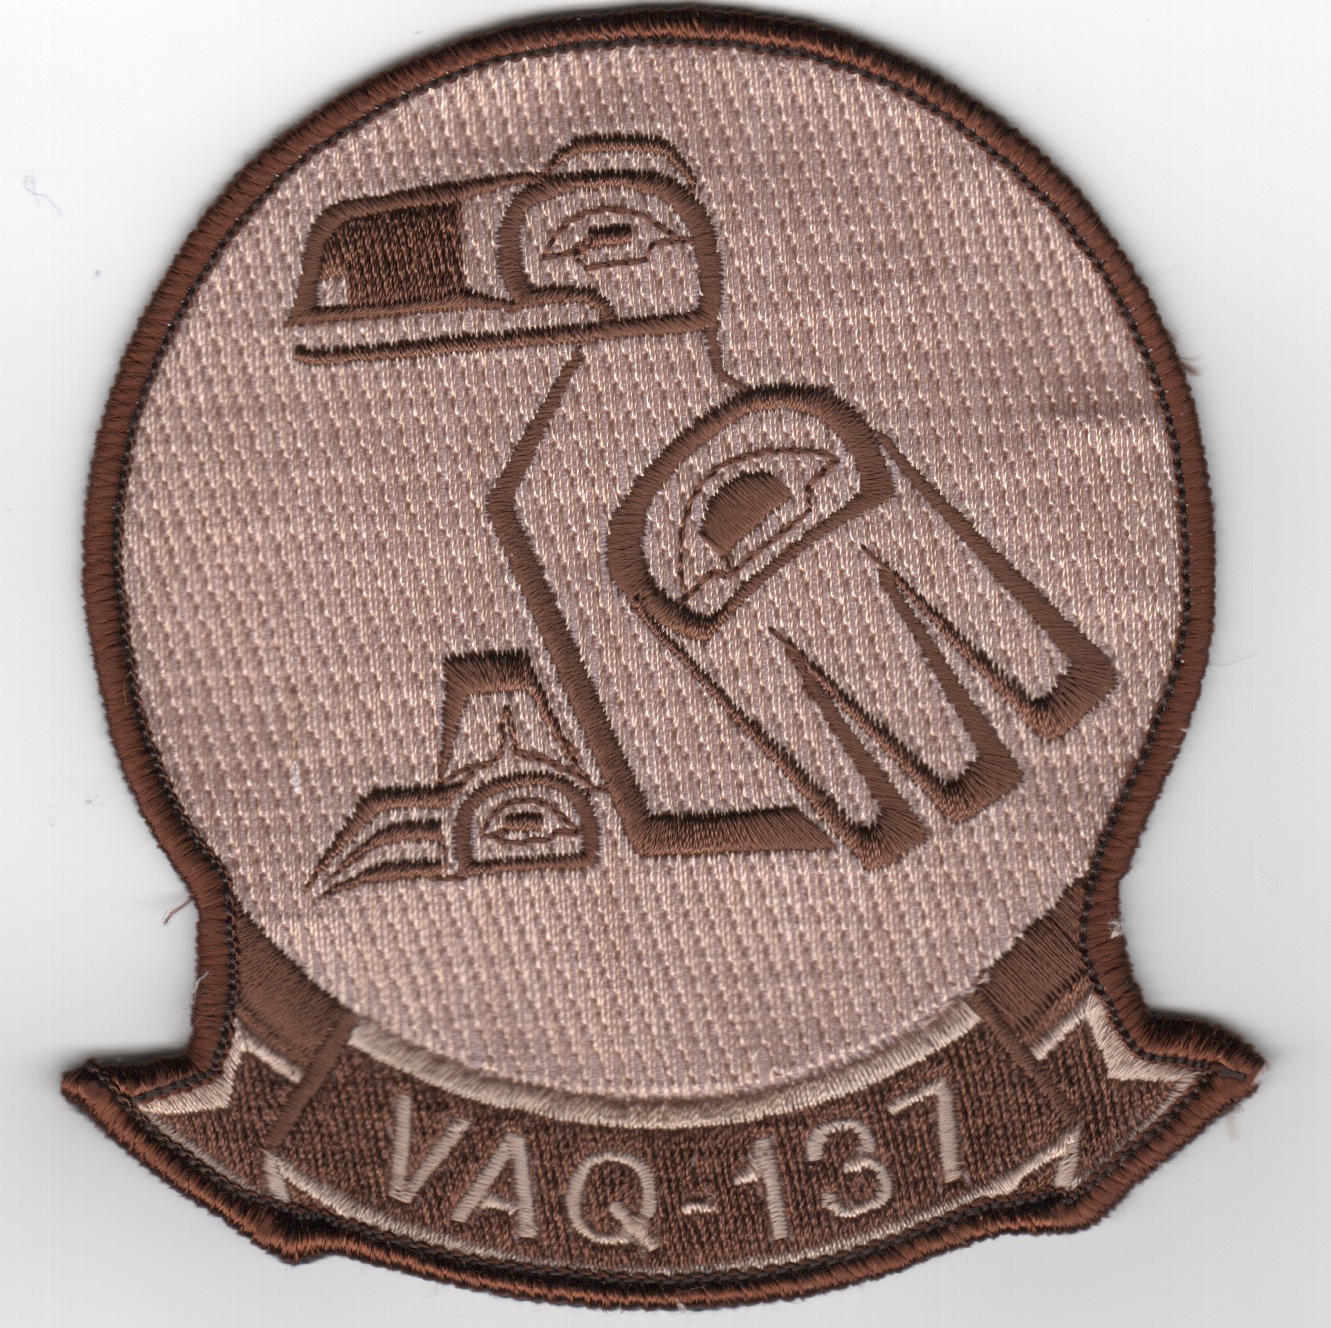 VAQ-137 Squadron Patch (Des)